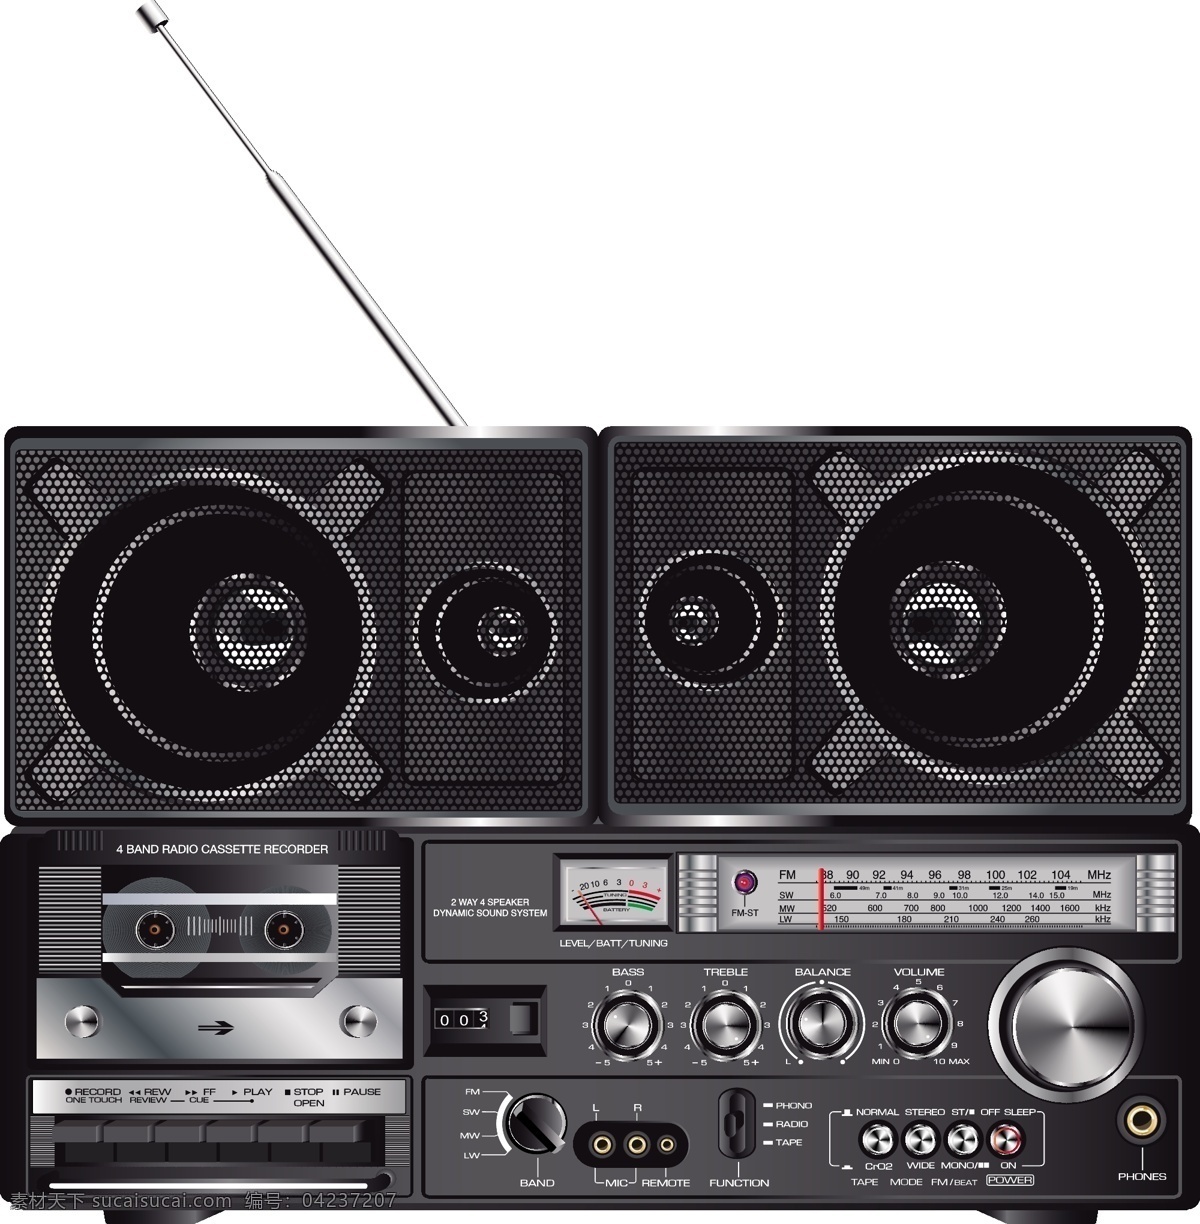 音频设备 手绘 音响 老式收音机 逼真 生活百科 矢量 生活用品